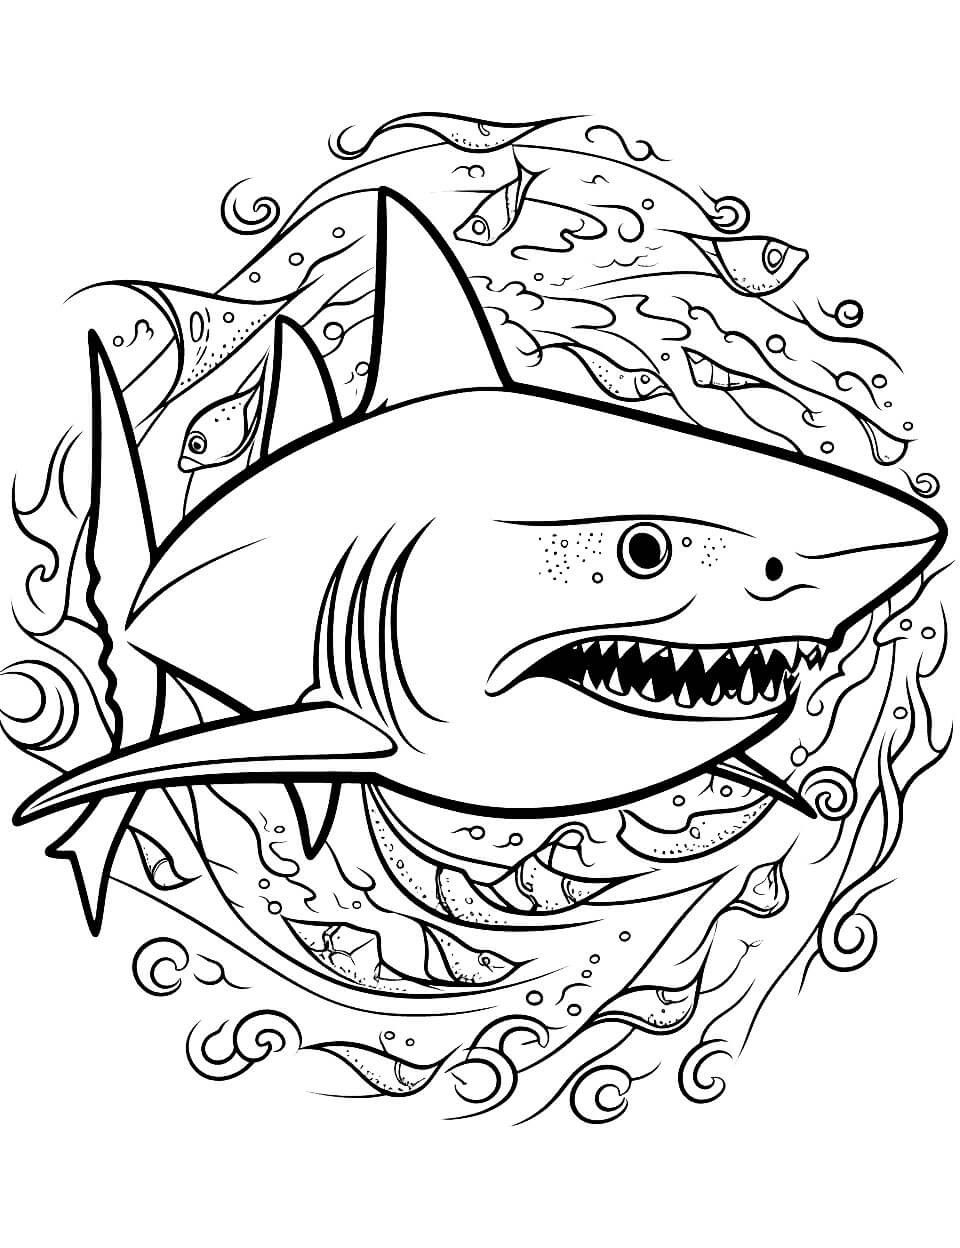 Mandala Shark Coloring Page - Sheet 3 Mandalas